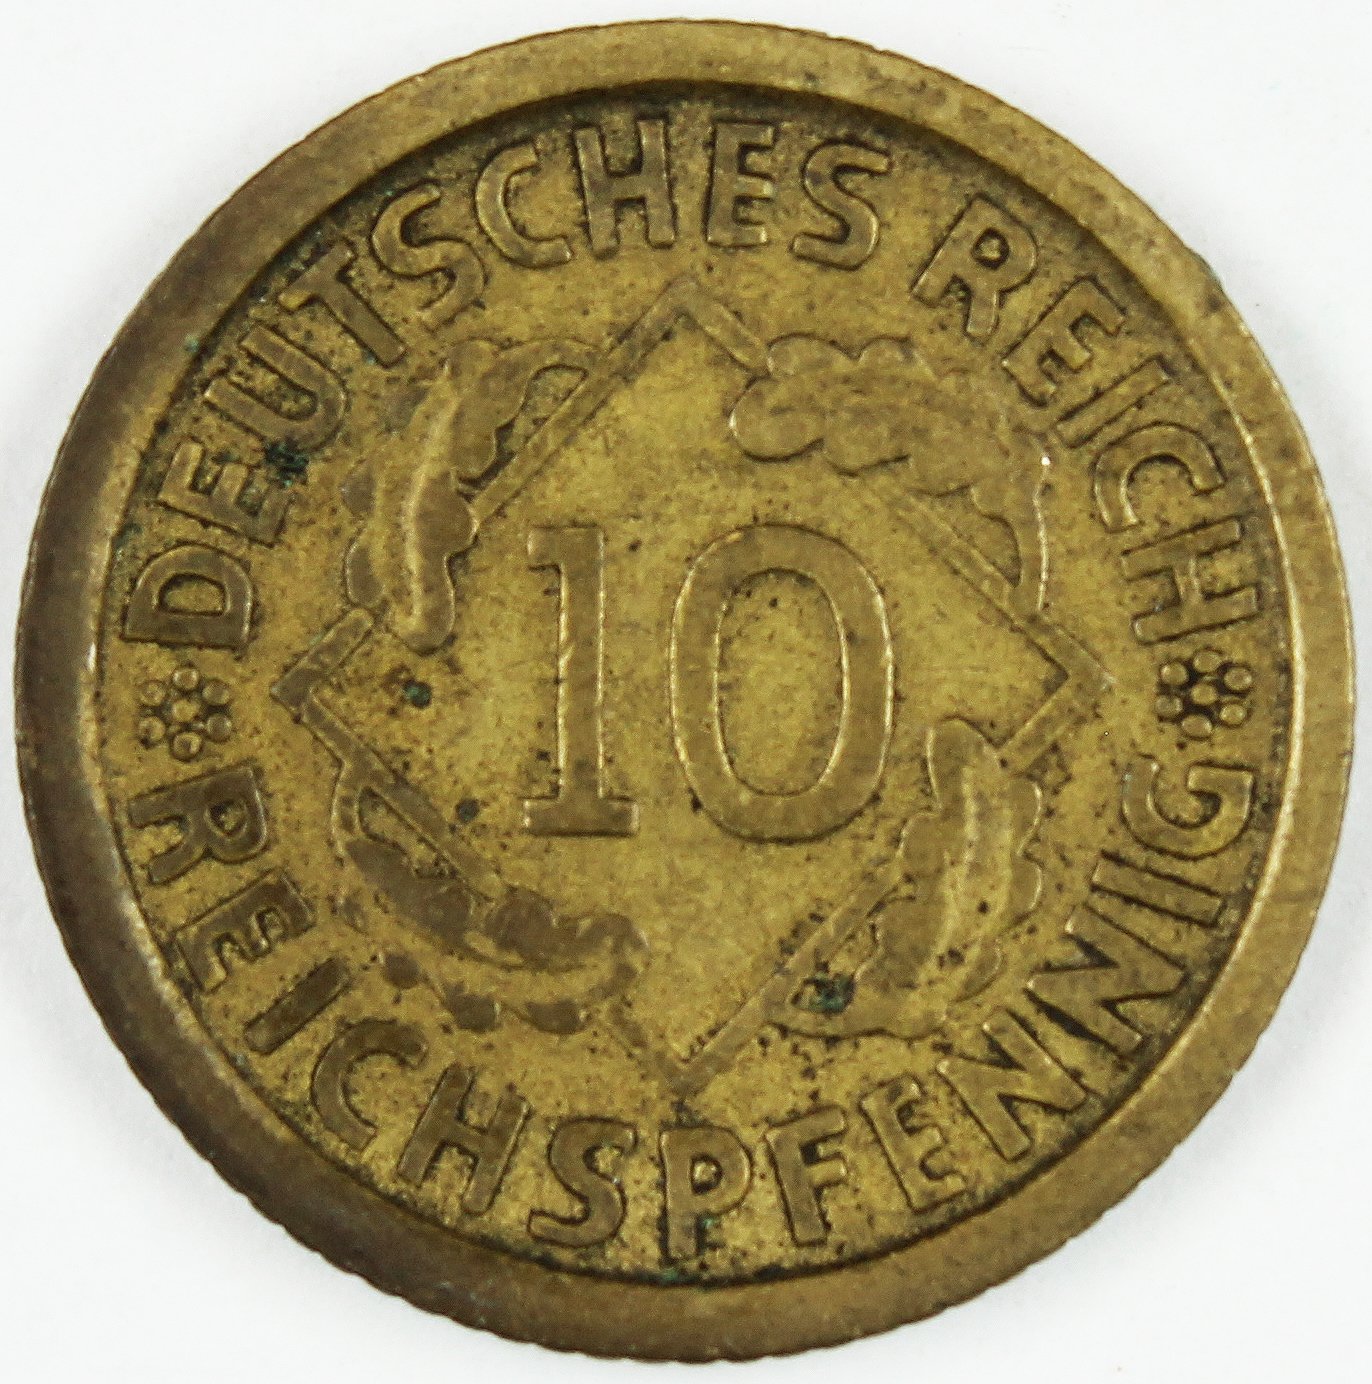 10 Rentenpfennige, 1929, Deutsches Reich (2x) (Museum Wolmirstedt RR-F)